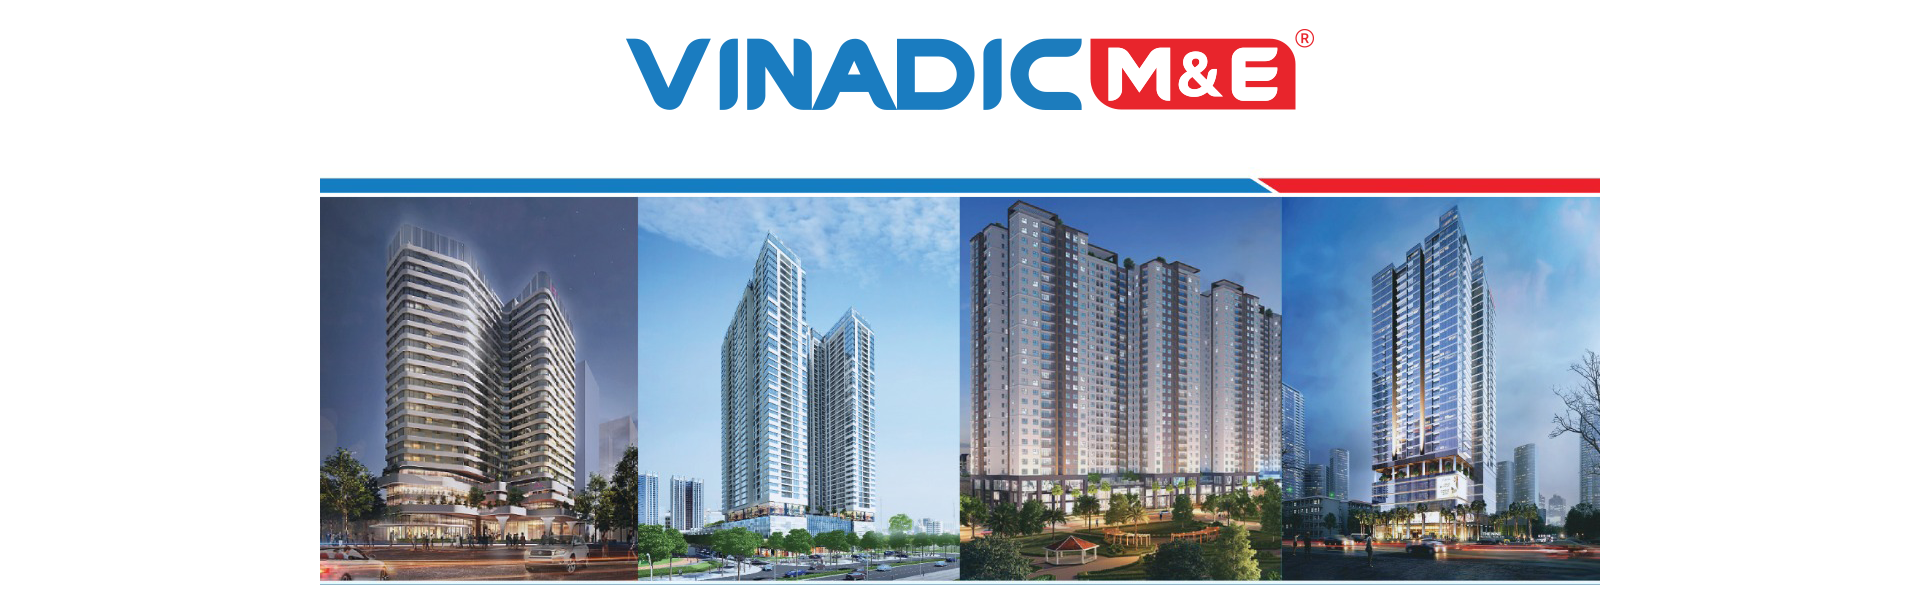 VINADIC ME - Mảnh ghép quan trọng trong hệ sinh thái của Tập đoàn xây dựng hàng đầu - 3